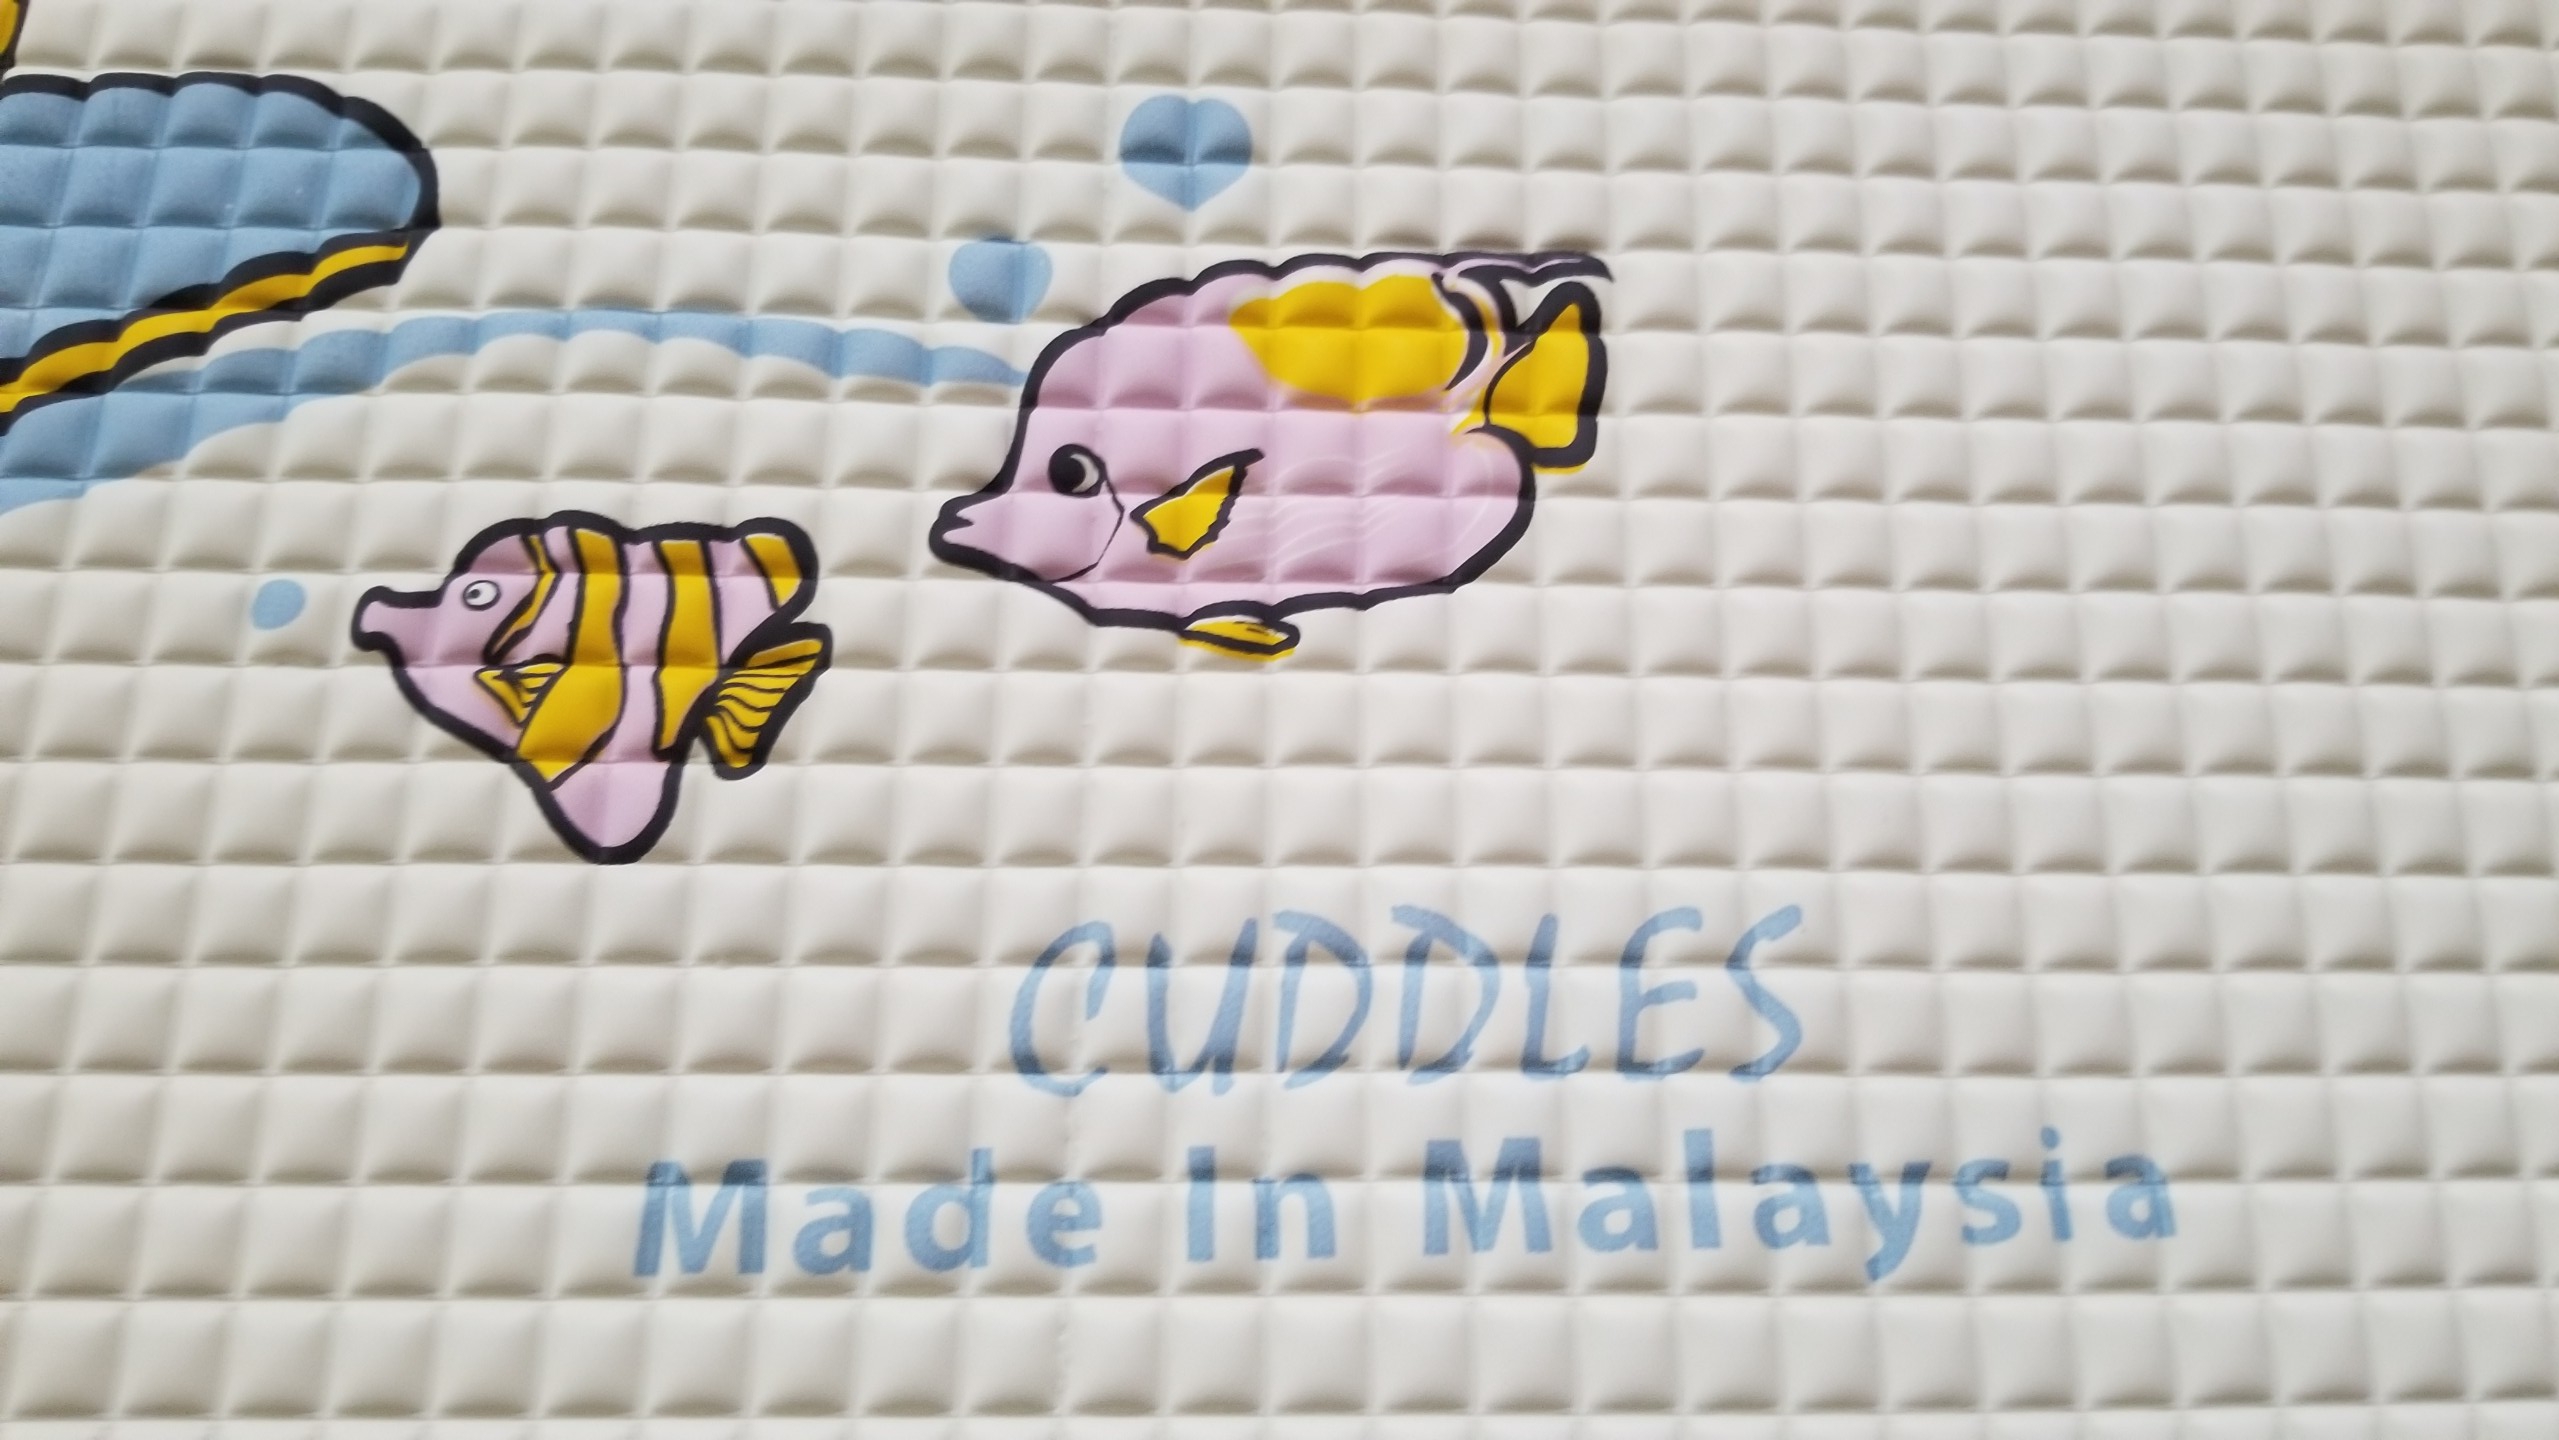 Tấm lót cao su chống thấm cho bé CUDDLES mẫu ngẫu nhiên